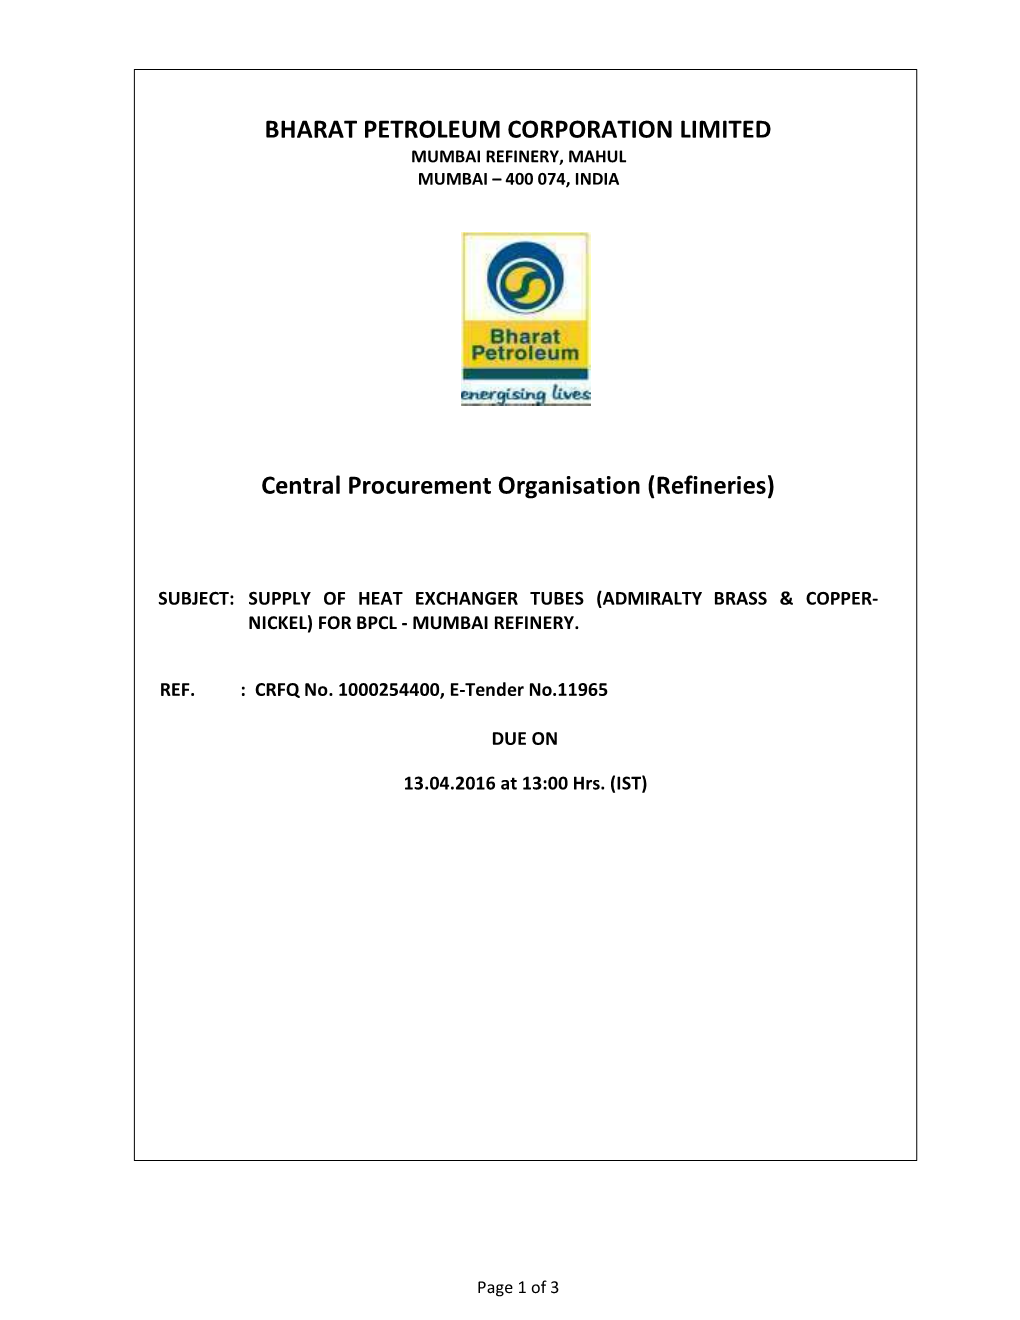 Central Procurement Organisation (Refineries)